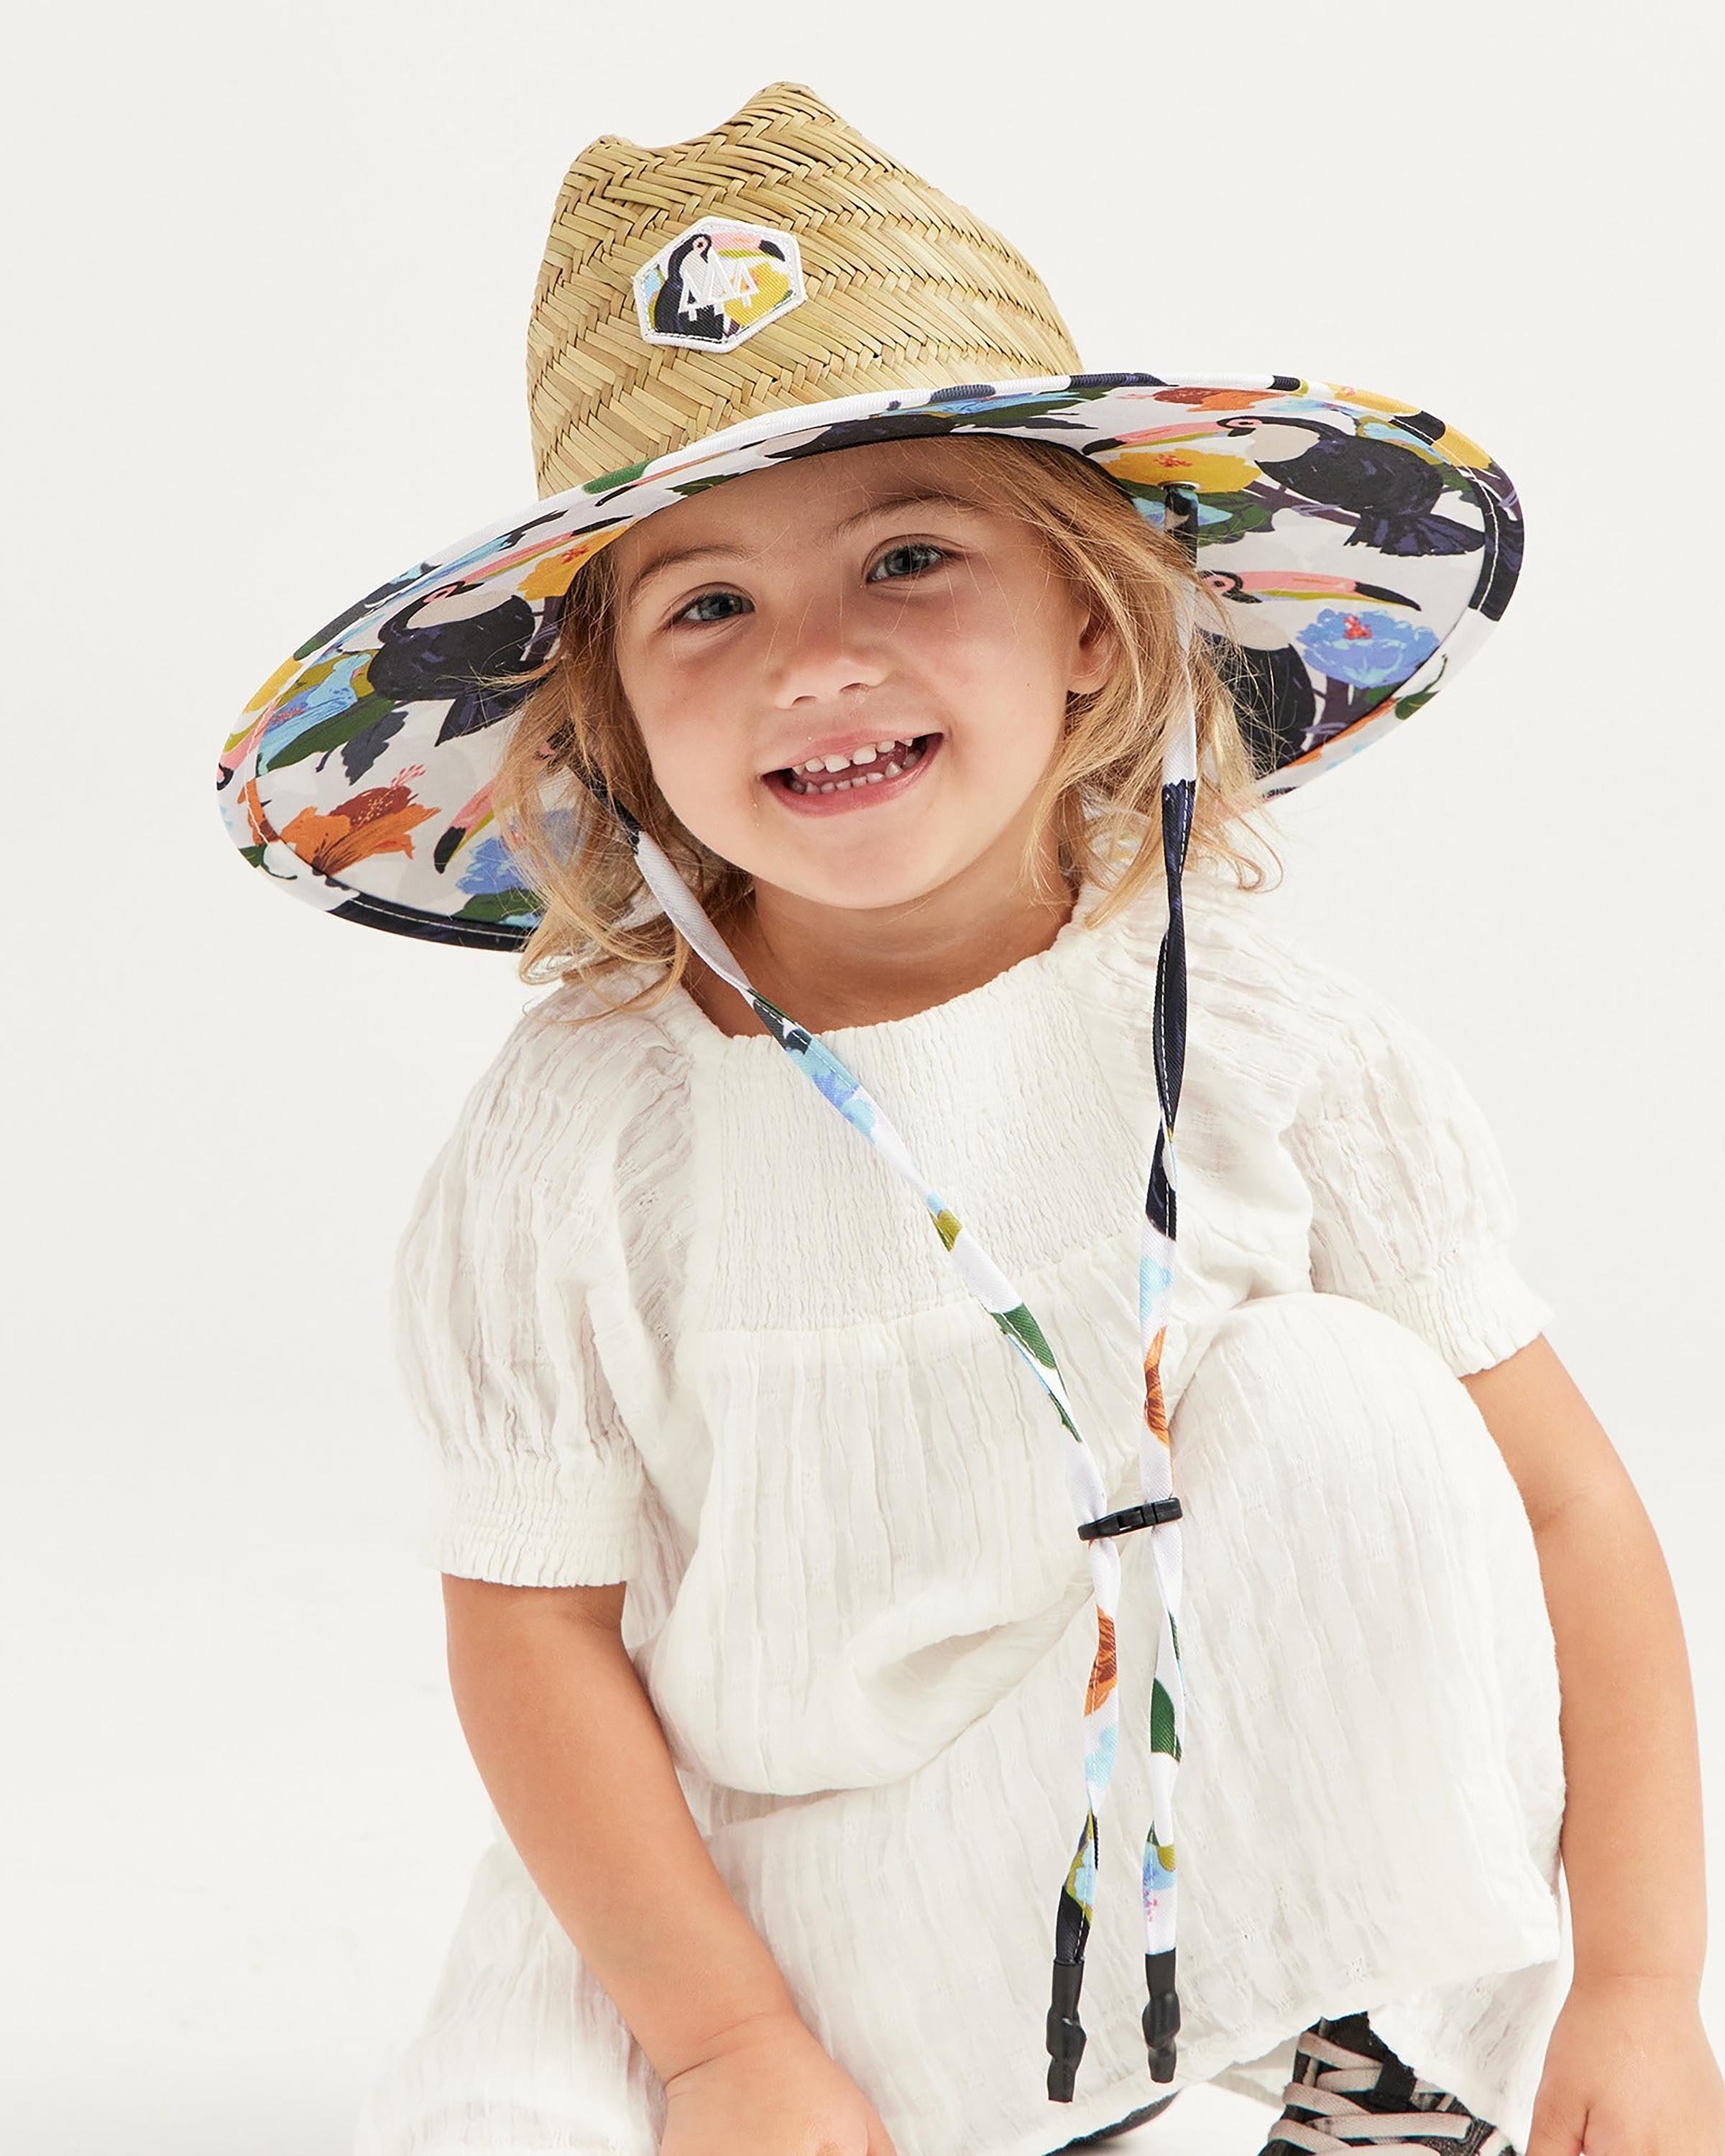 Hemlock little girl model wearing the Sammy Straw Little Kids Lifeguard Hat